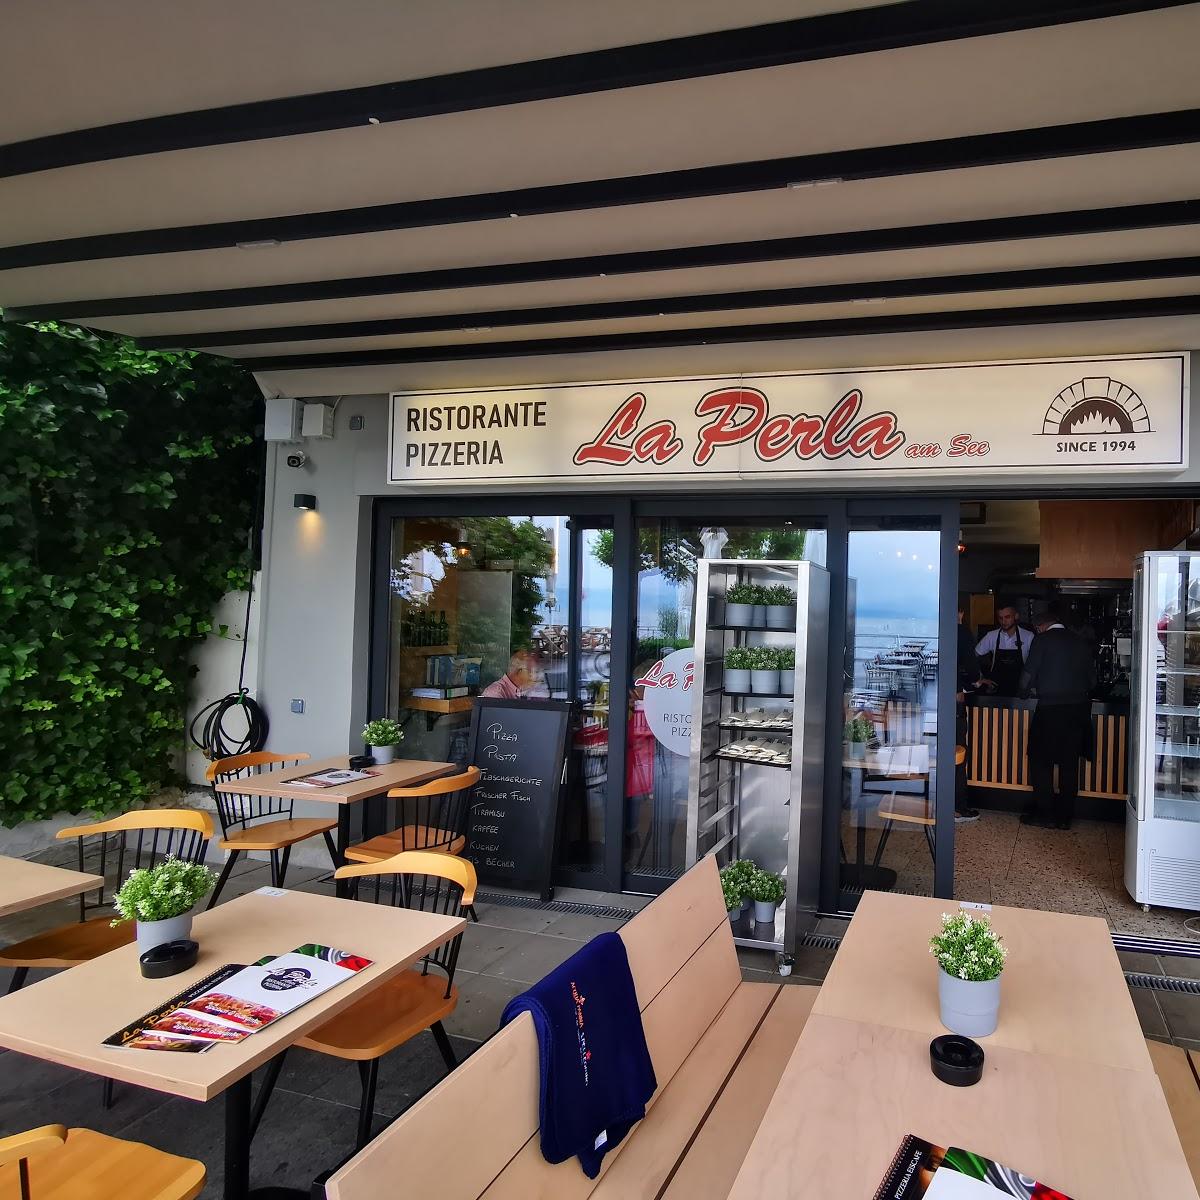 Restaurant "La Perla am See" in Friedrichshafen